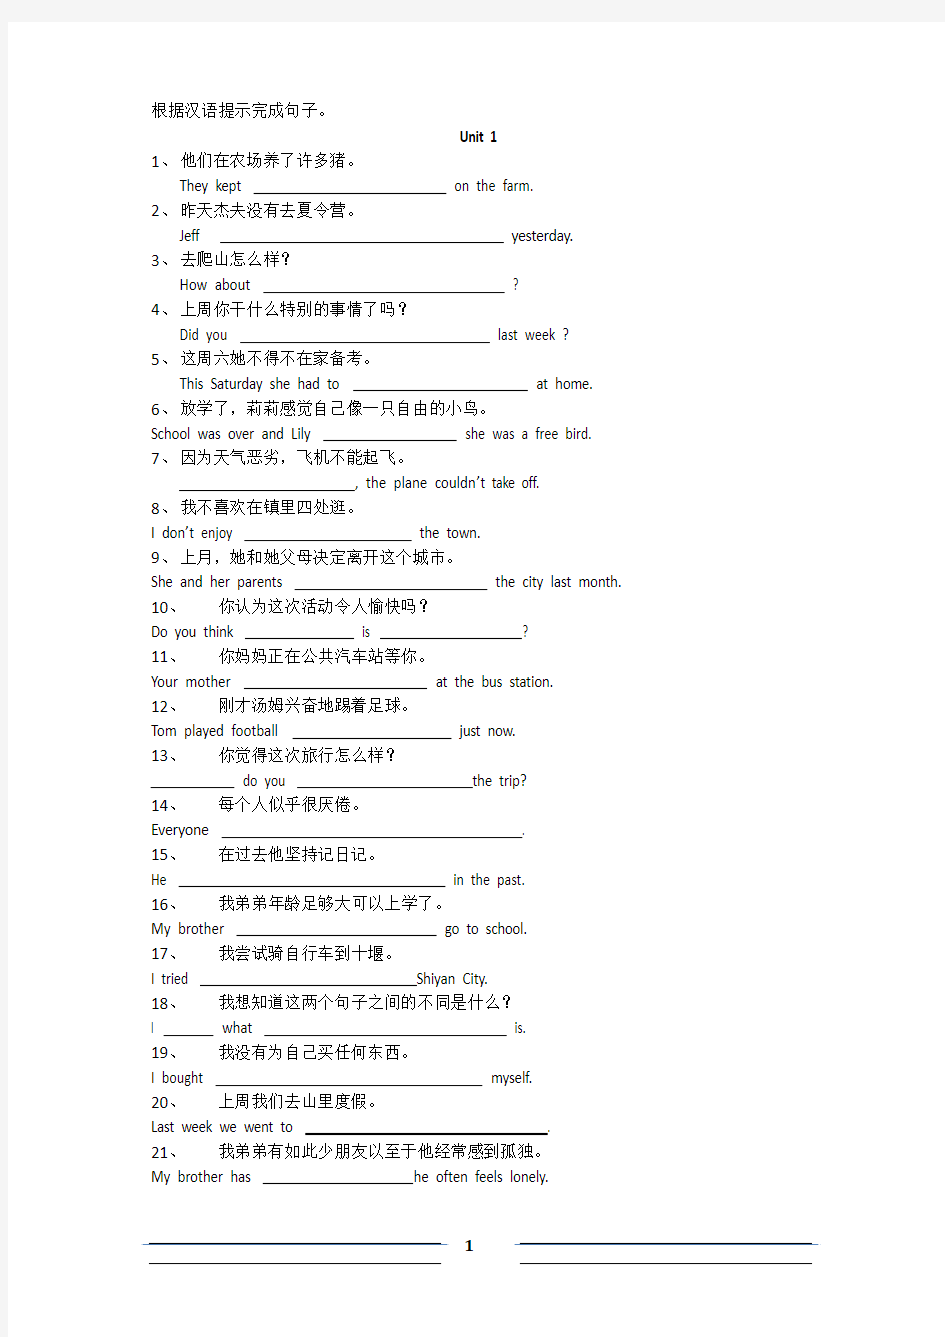 根据汉语提示完成句子